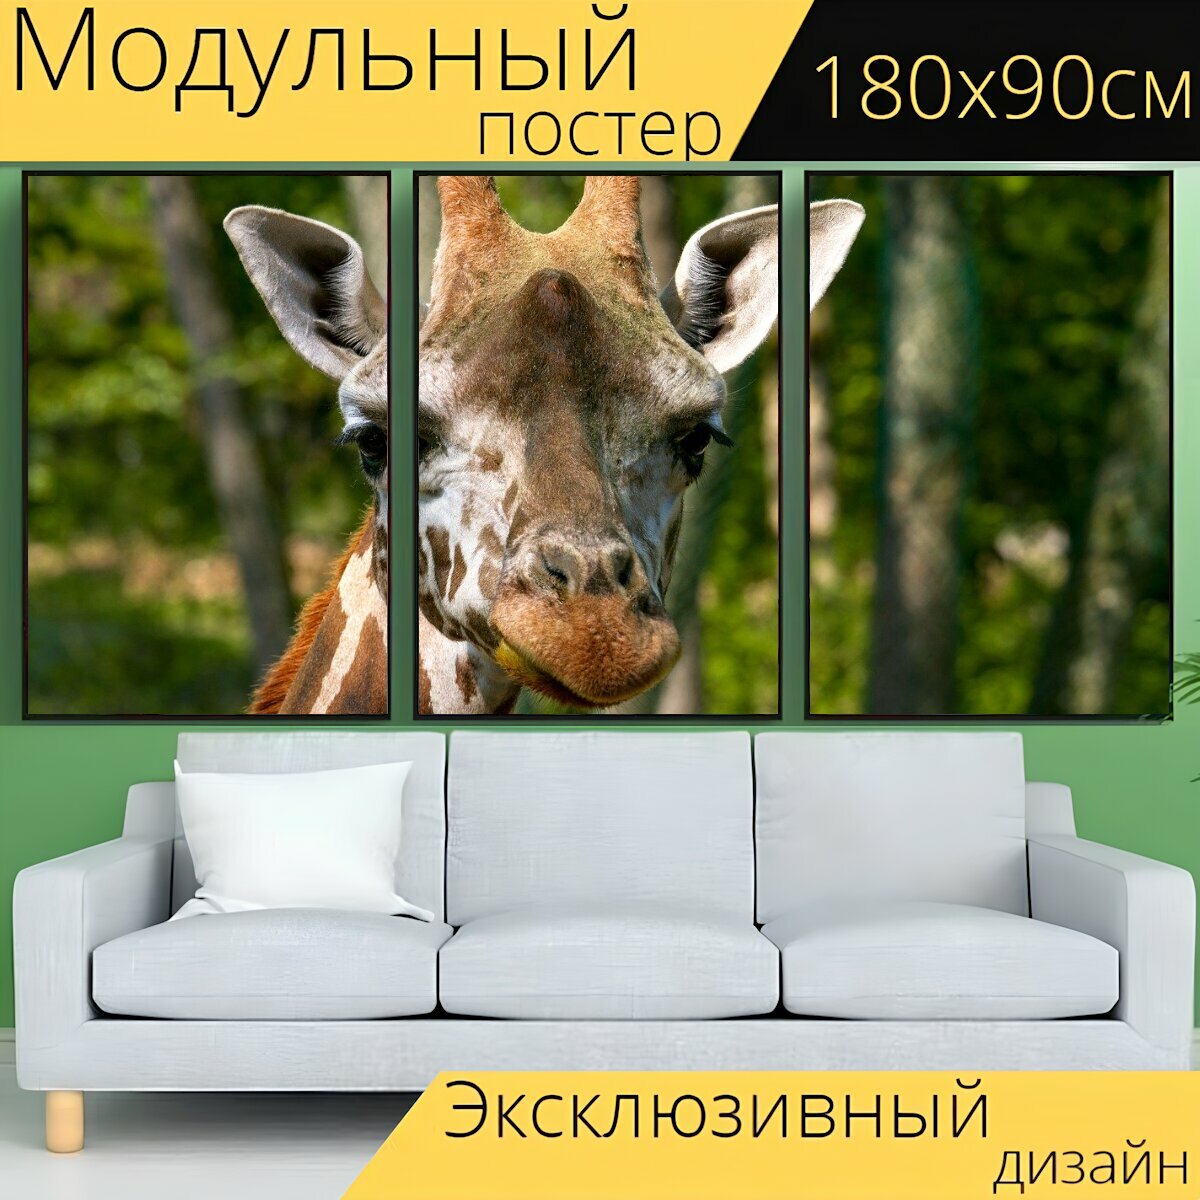 Модульный постер "Жирафа, животное, голова" 180 x 90 см. для интерьера